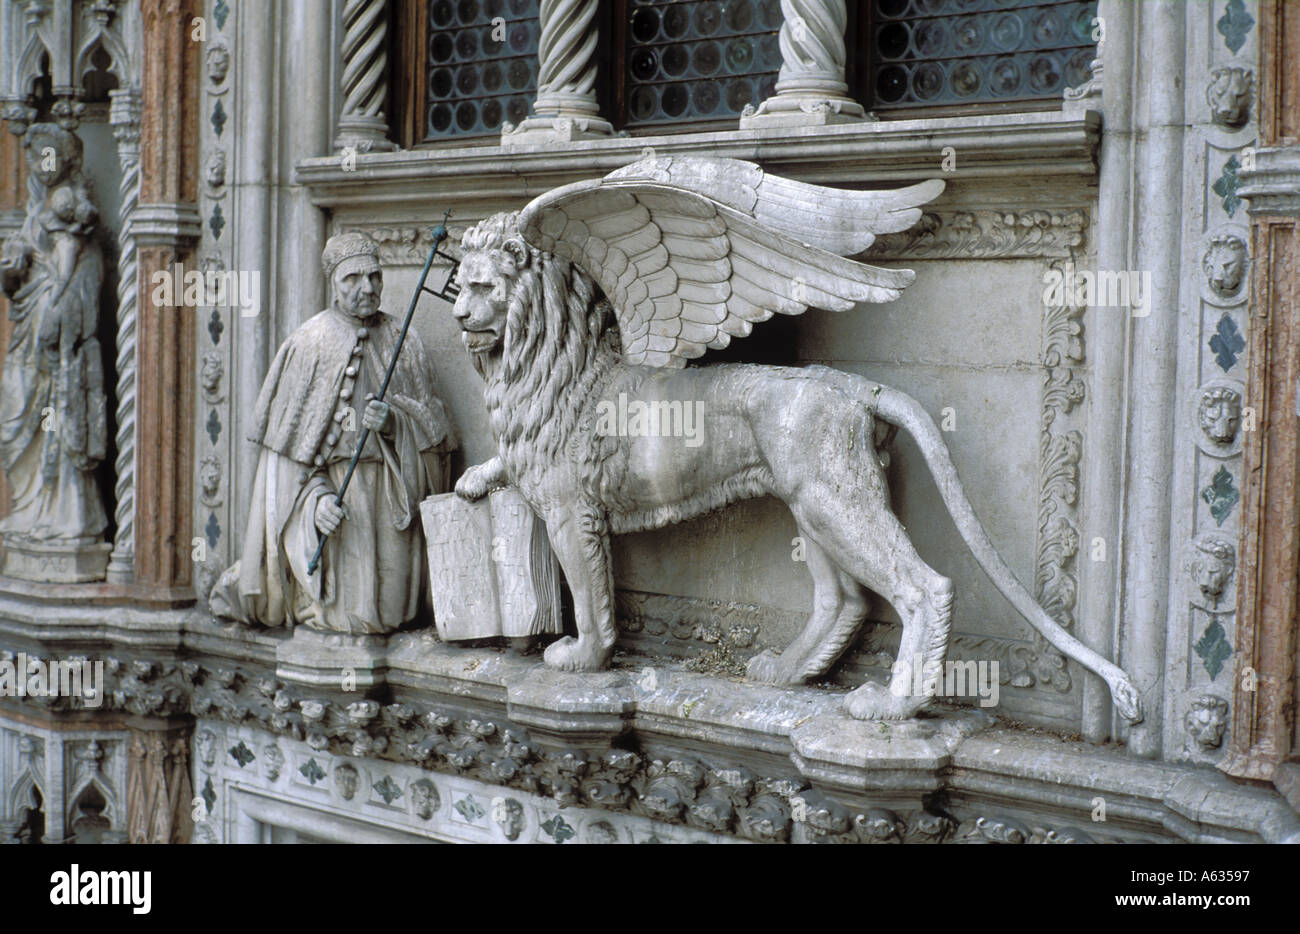 Italie Venise Le Palais des Doges détail au cours de la porte Banque D'Images